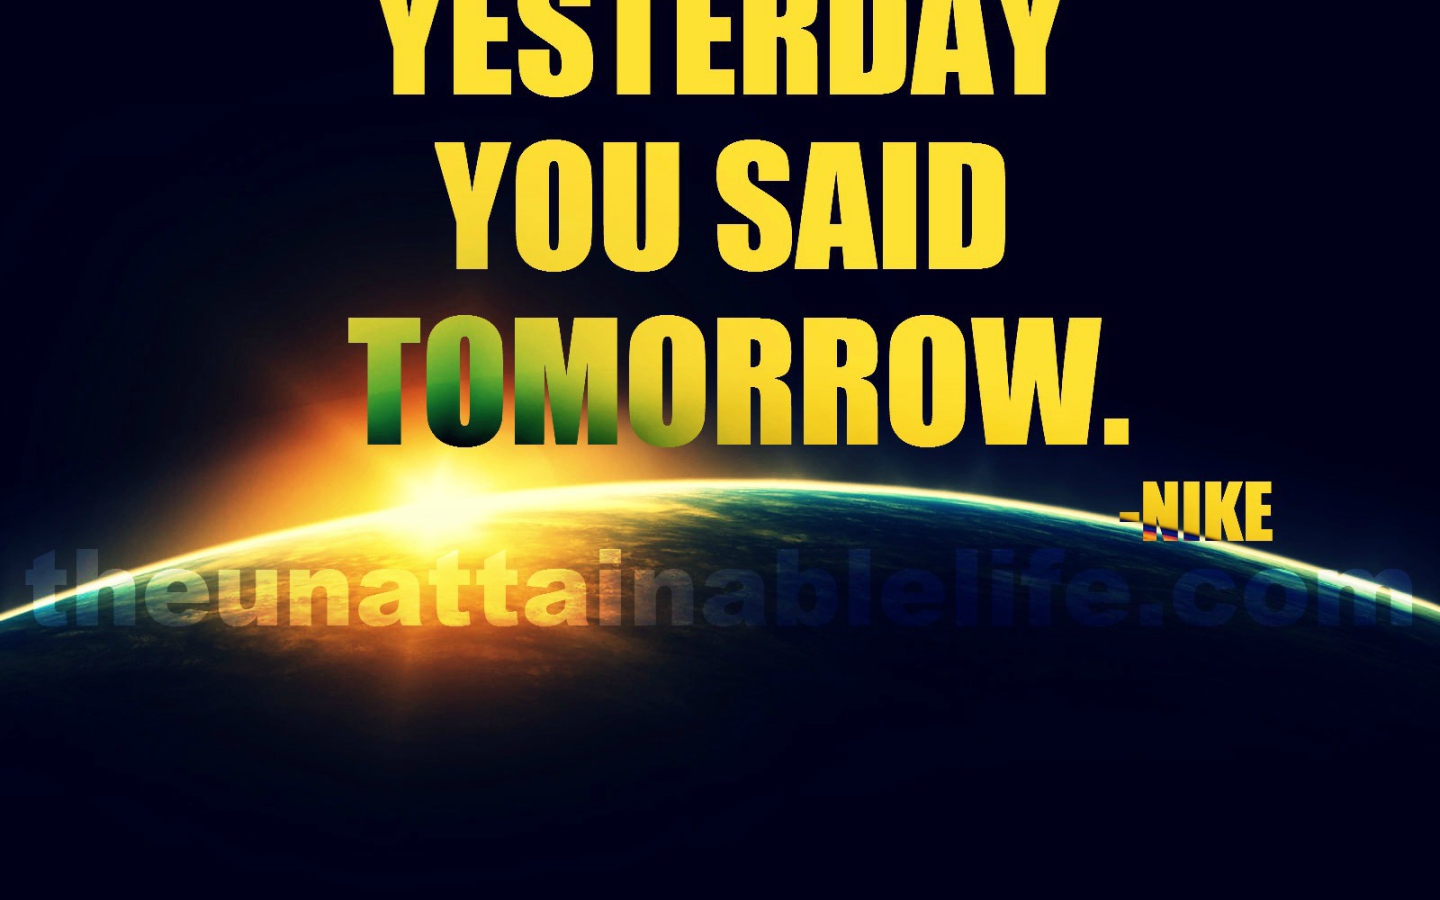 yesterday you said tomorrow. nike